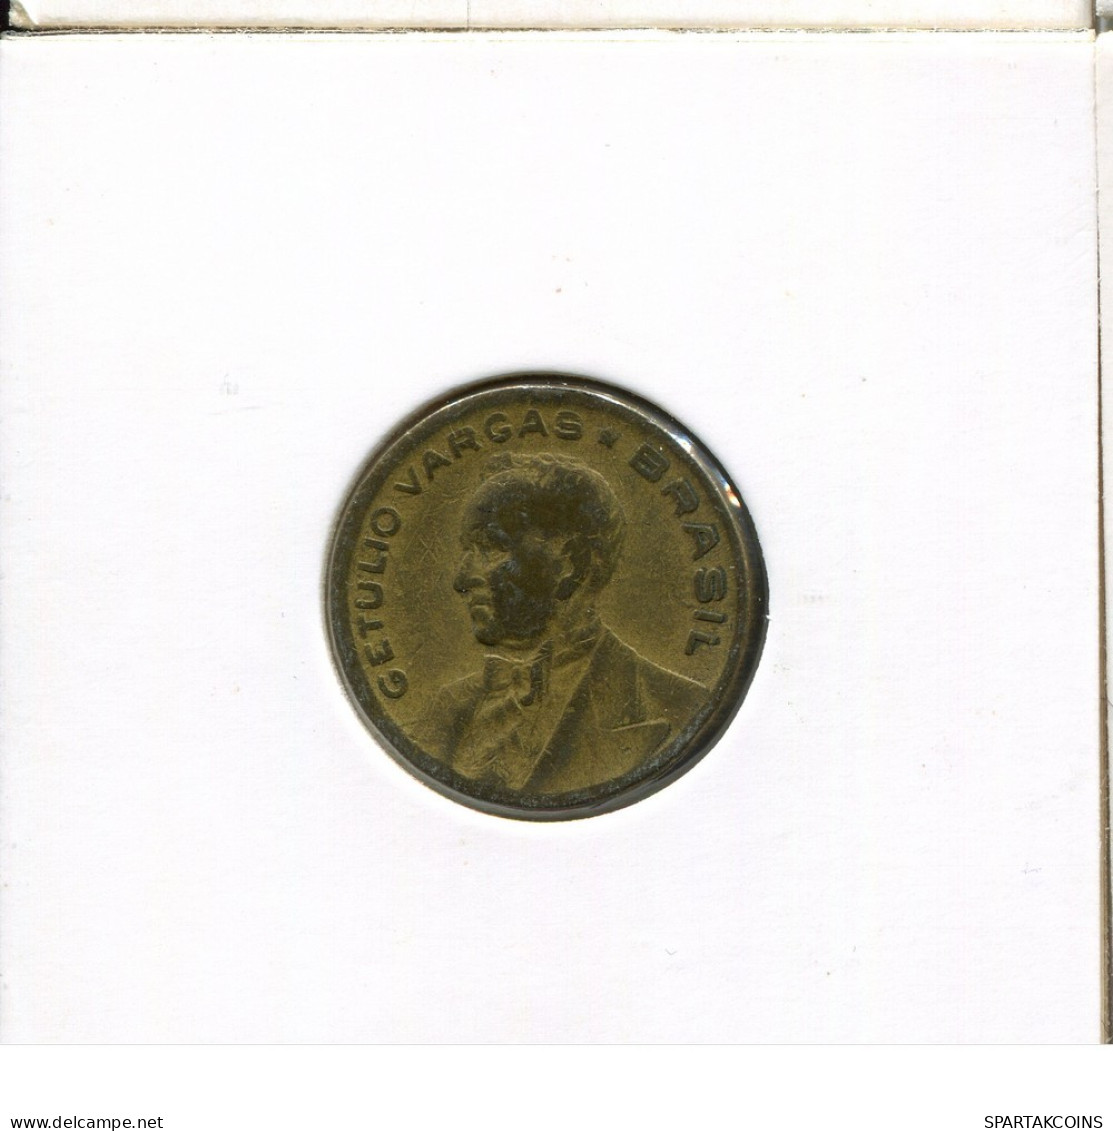 20 CENTAVOS 1945 BRAZIL Coin #AR305.U.A - Brésil